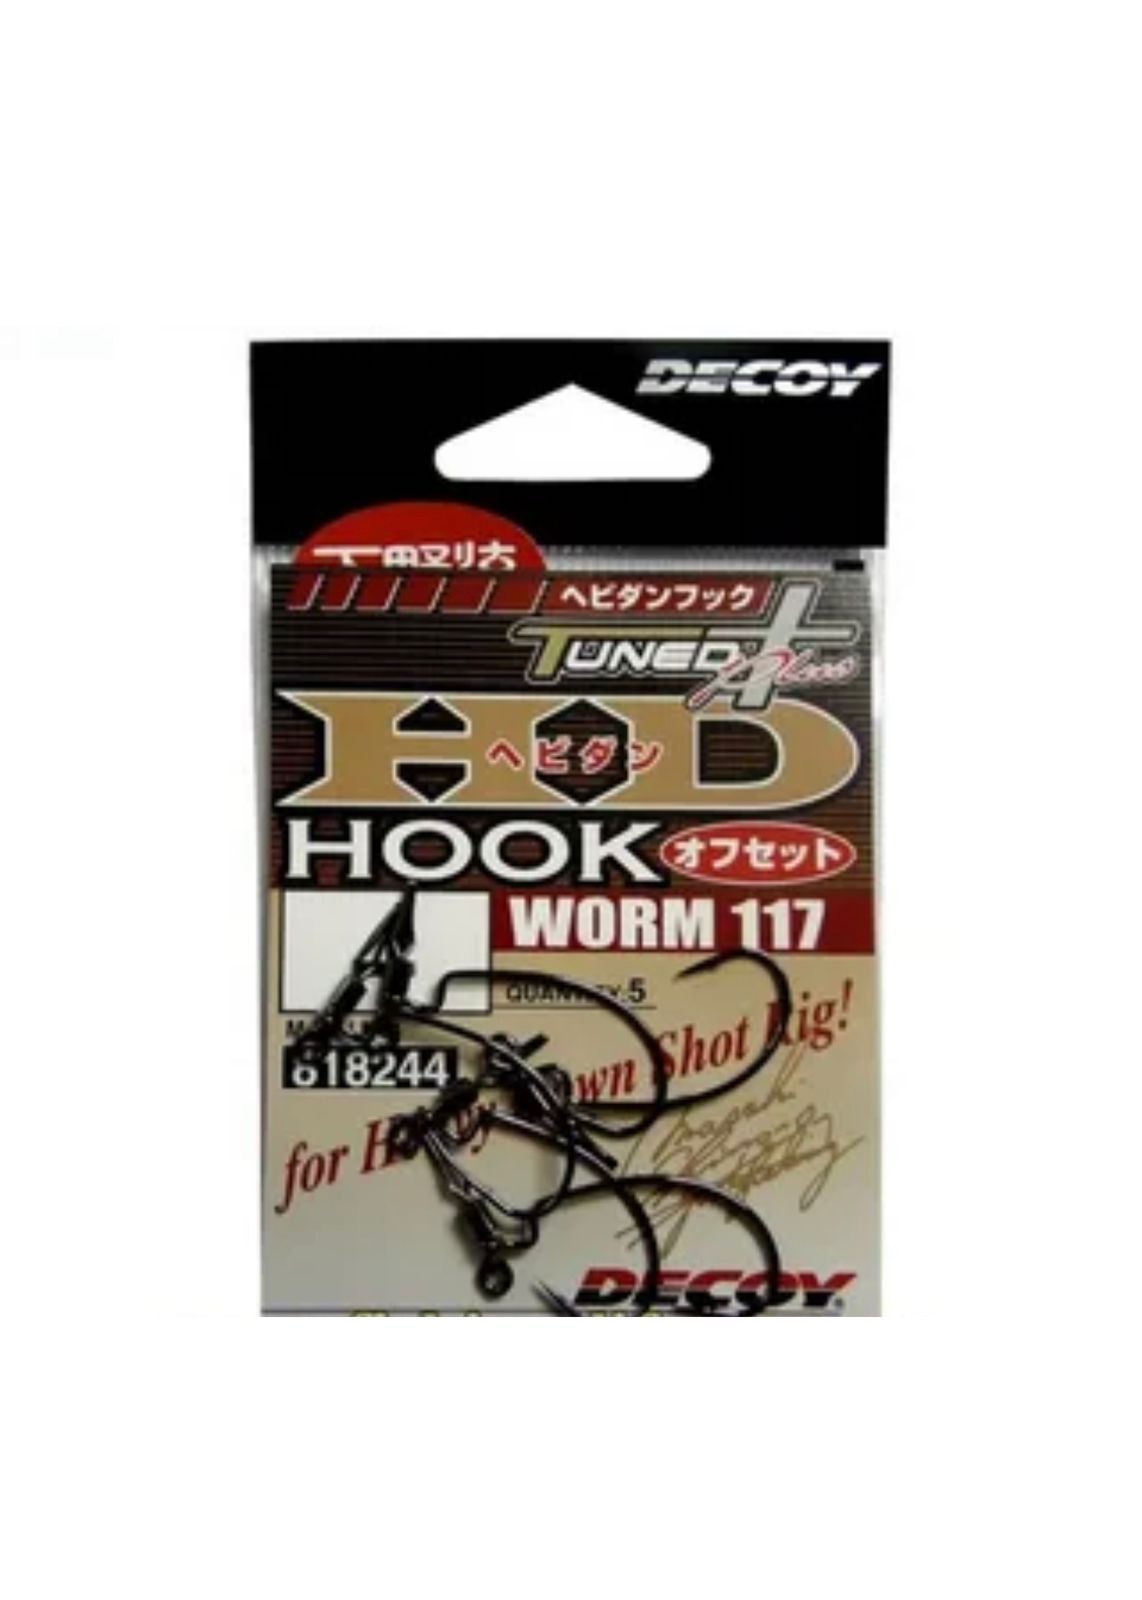 Крючок Decoy Worm 117 HD Hook offset #1 (5шт) - купить с доставкой